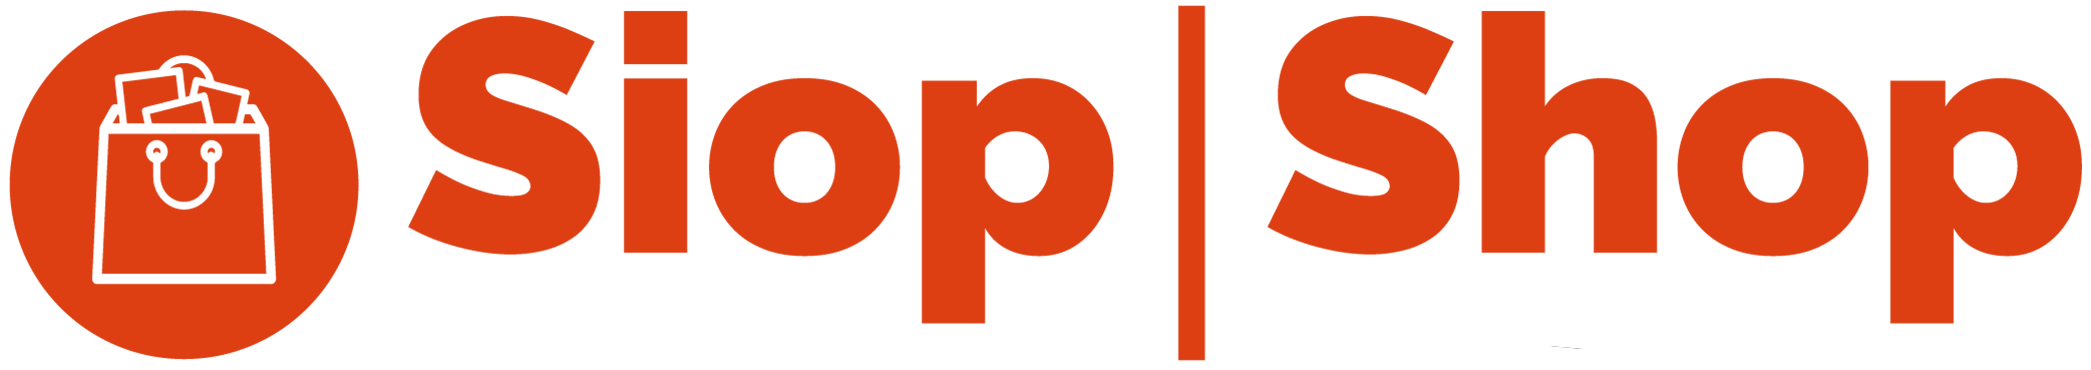 Logo Siop Myfyrwyr